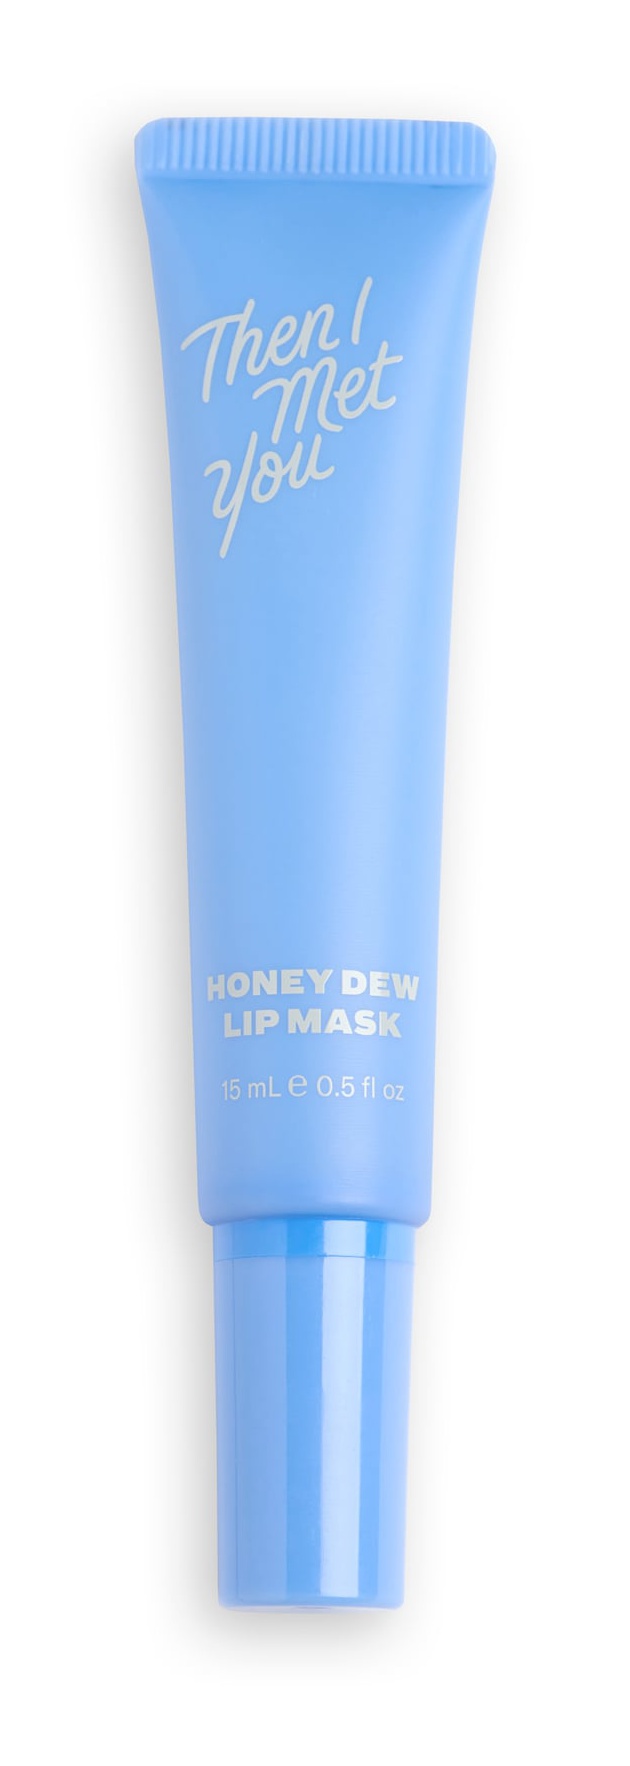 Then I Met You Honey Dew Lip Mask